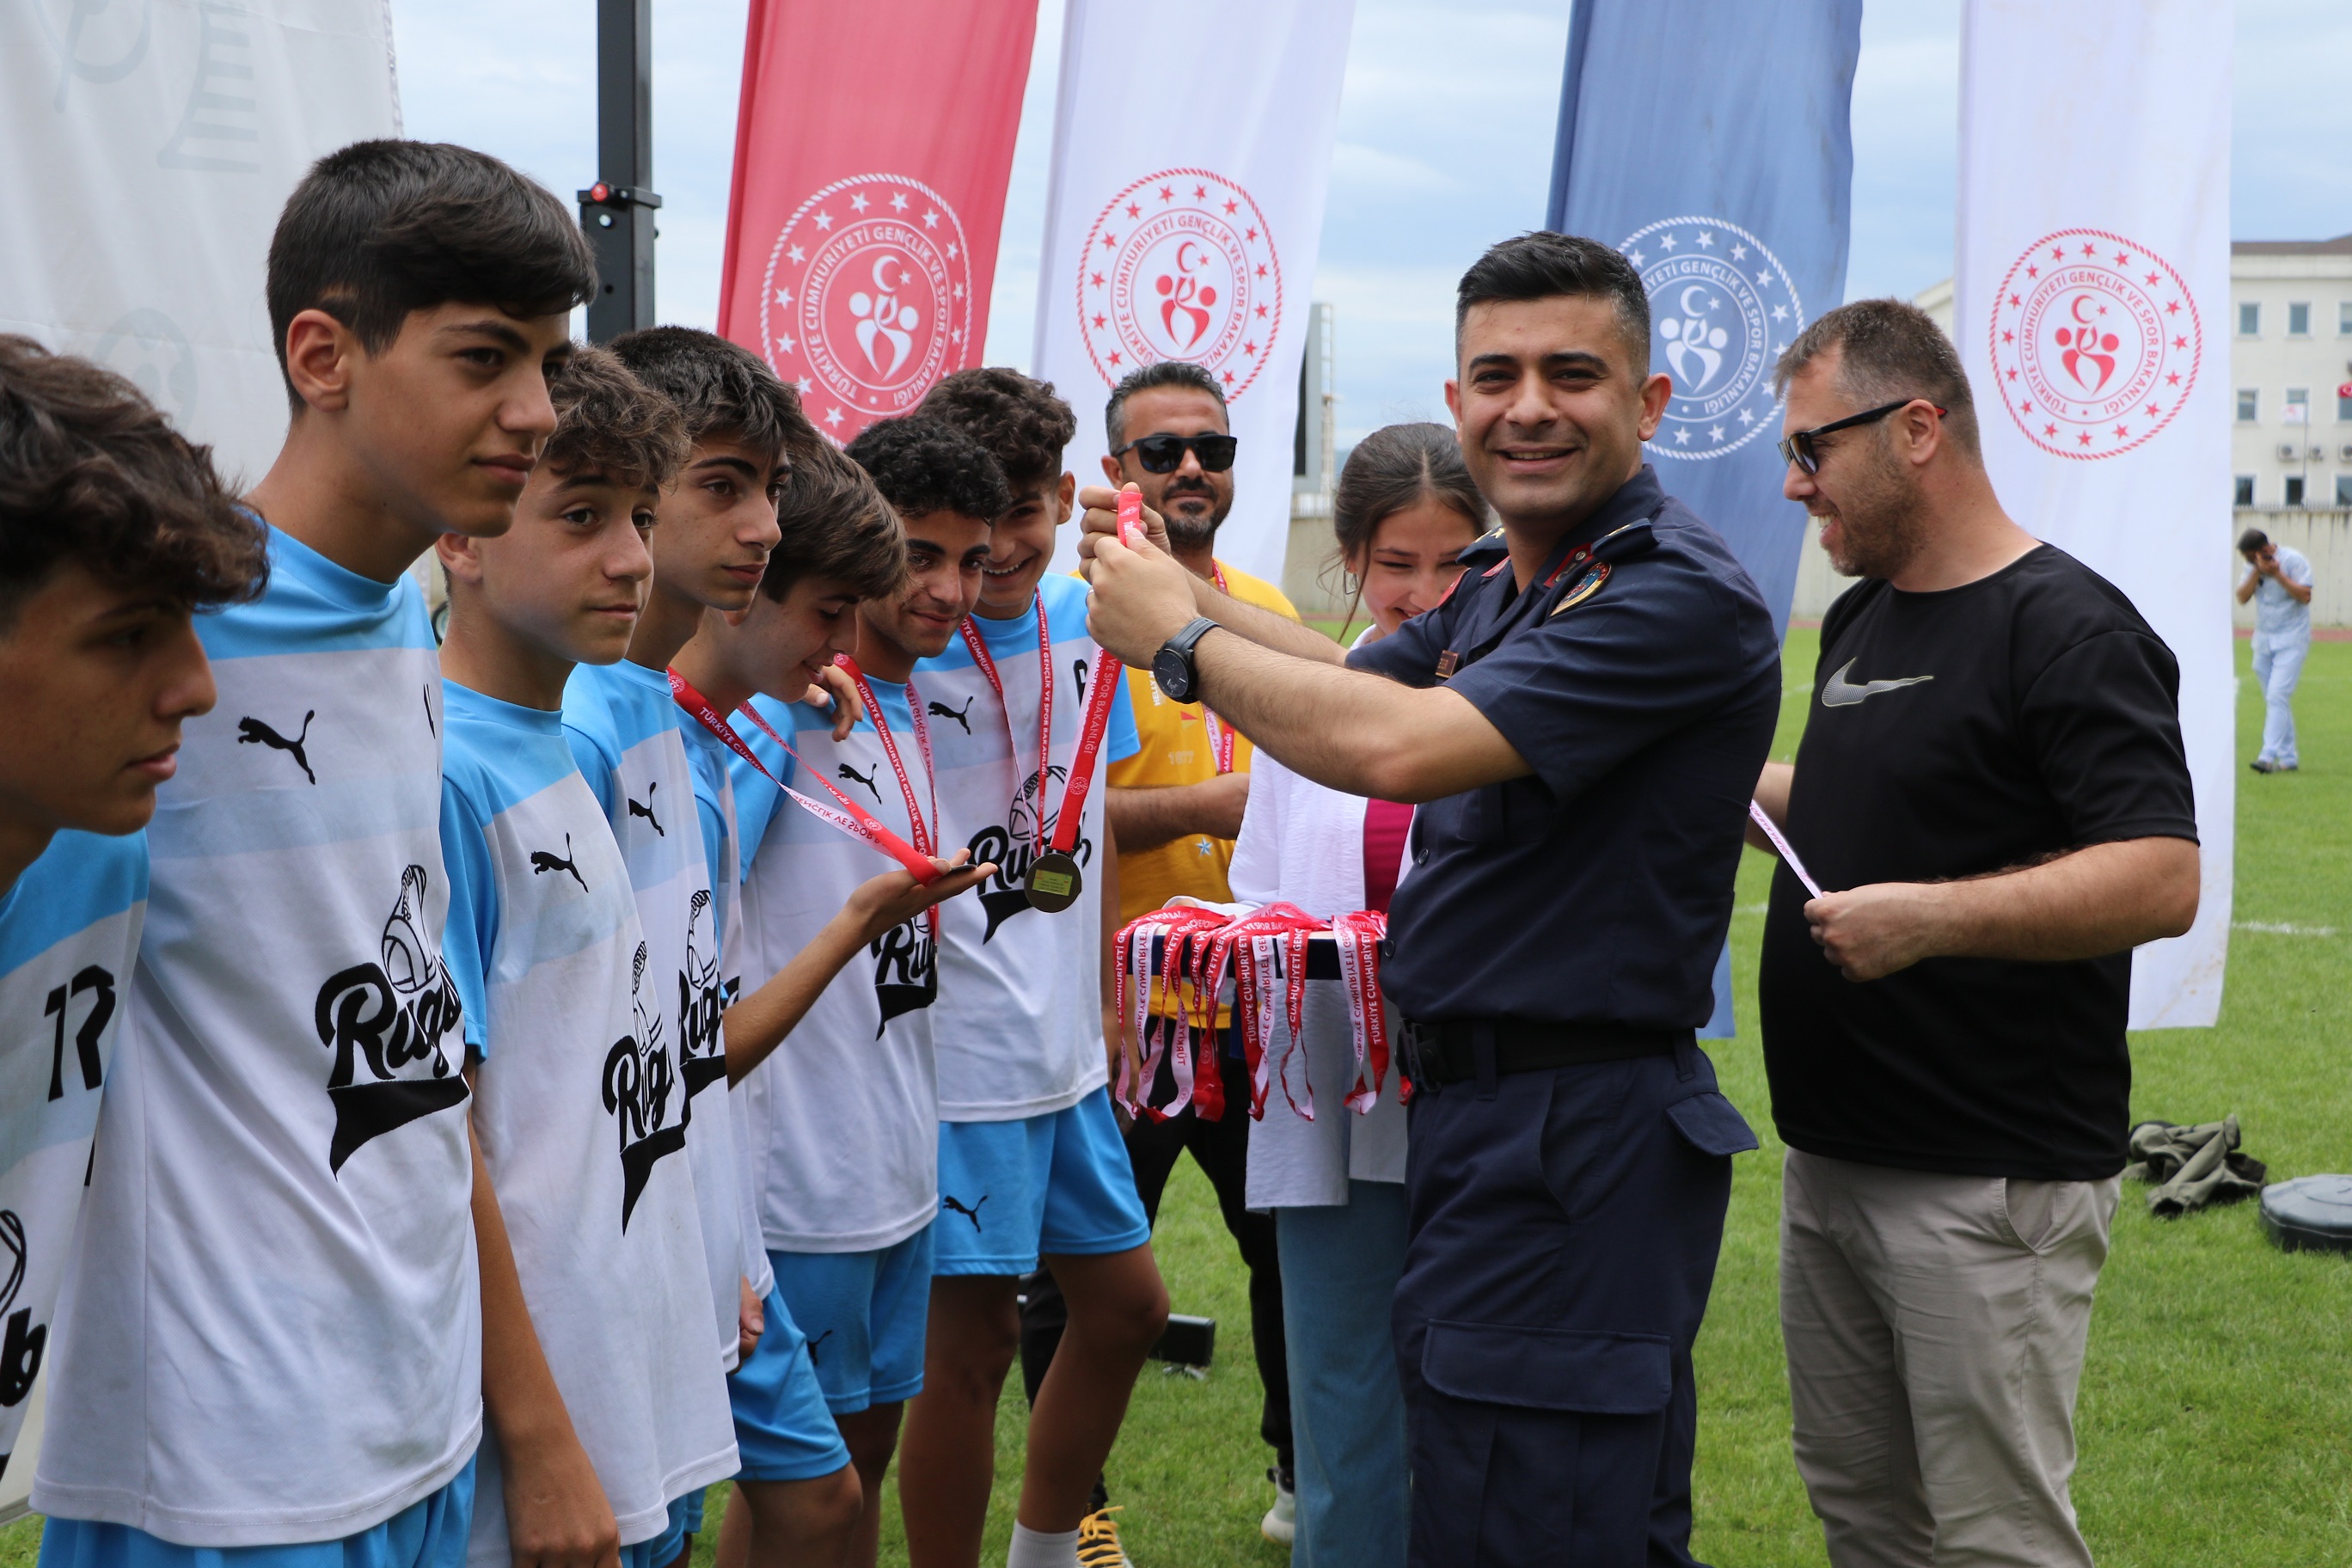 Ragbi Yıldızlar Türkiye Şampiyonası Sona Erdi